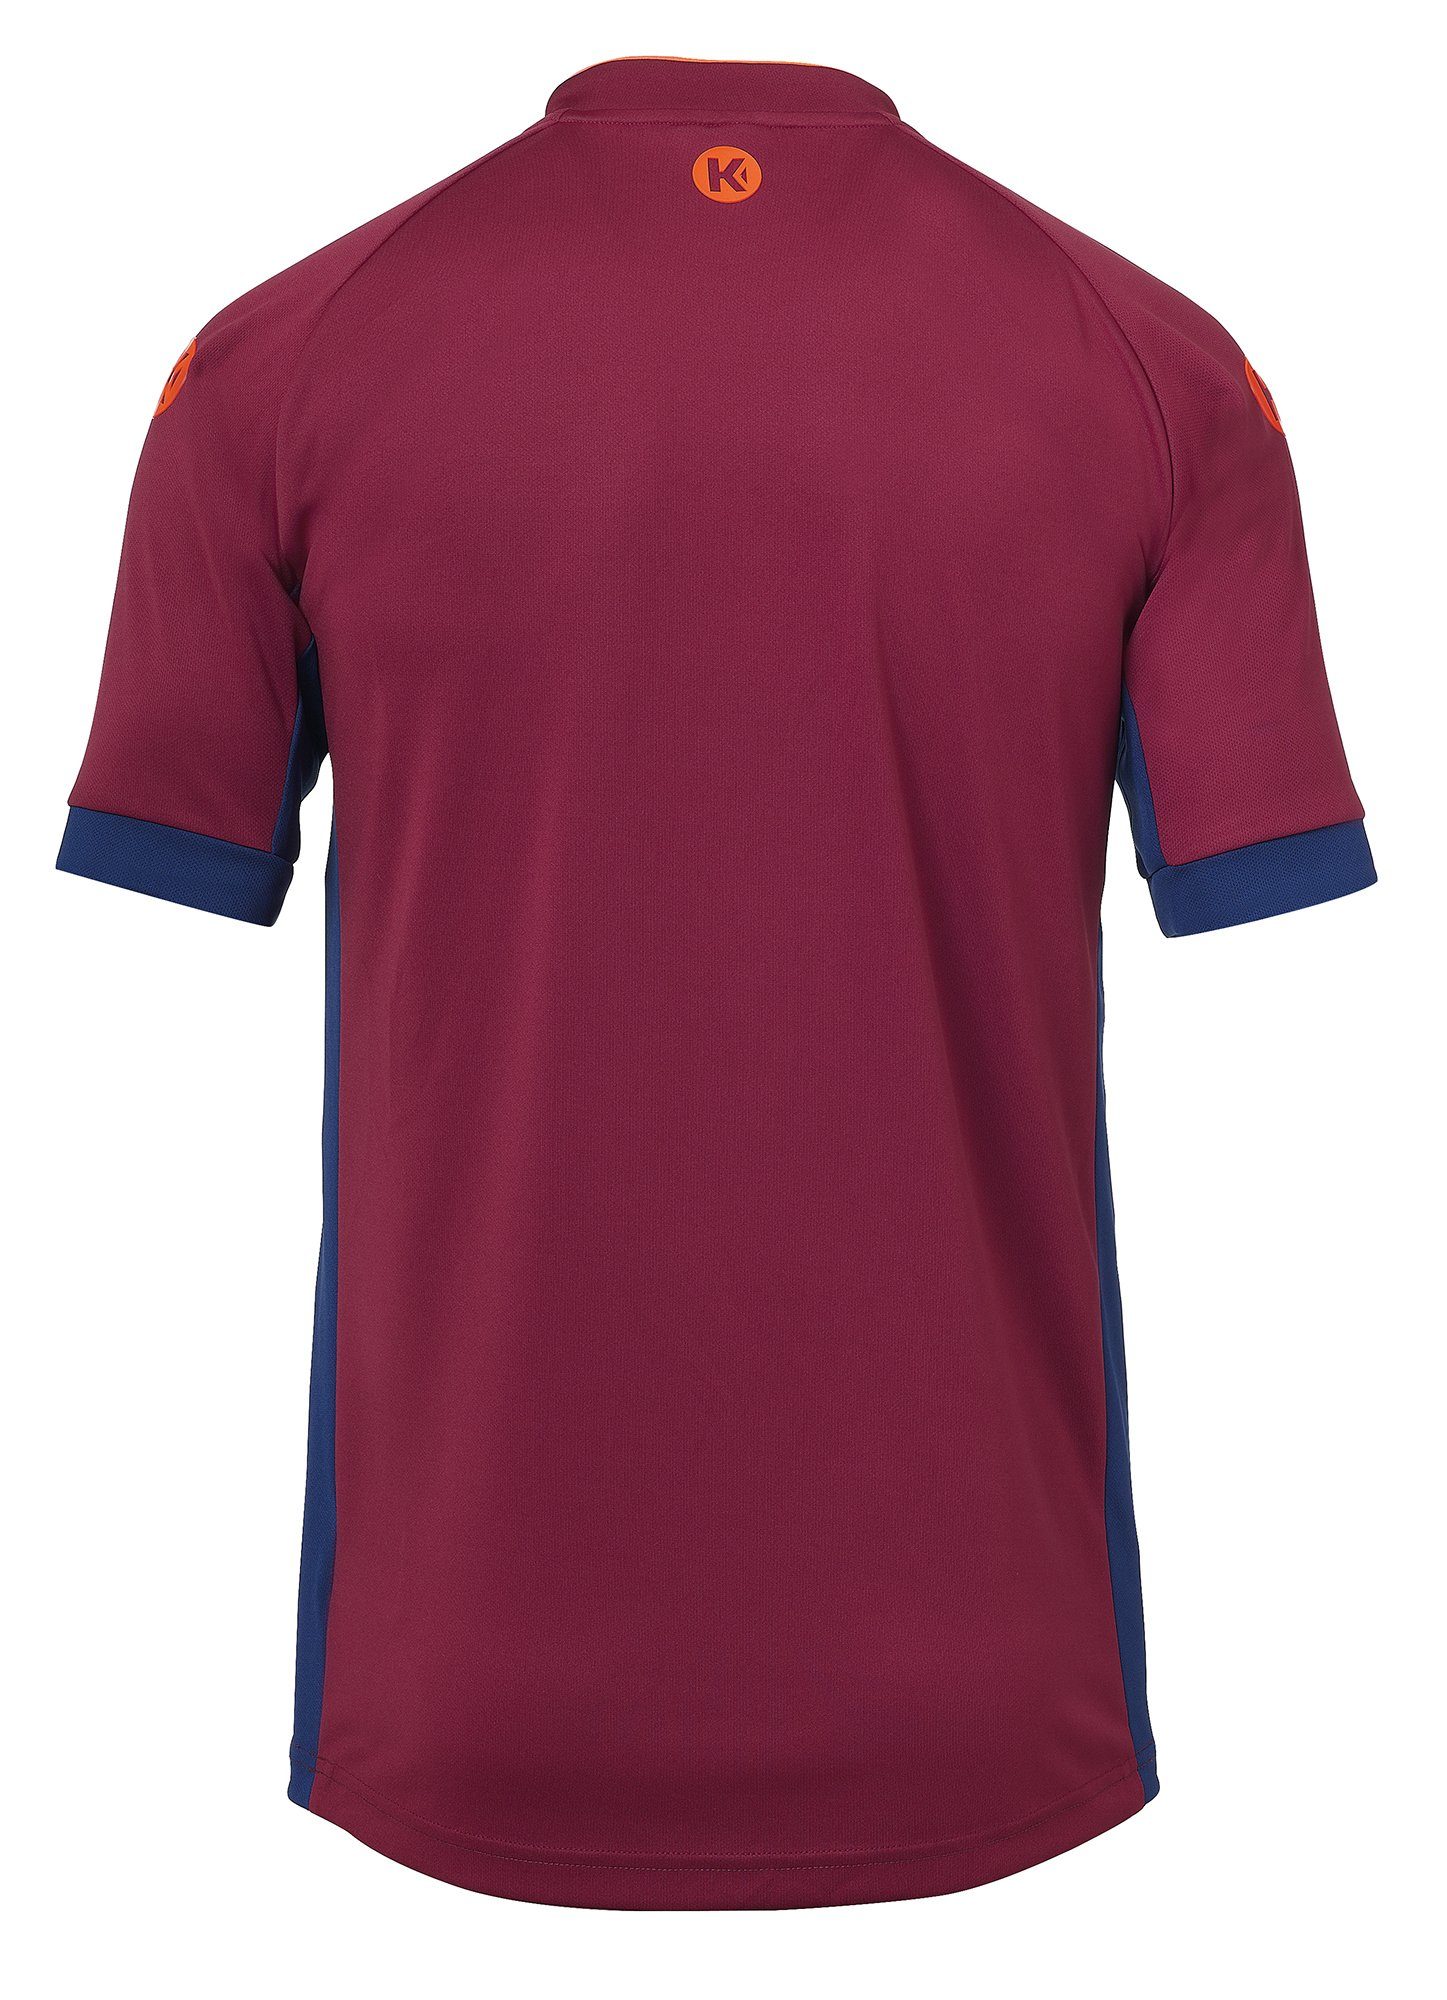 Kempa Trainingsshirt Kempa Shirt PRIME TRIKOT rot deep blau/deep schnelltrocknend